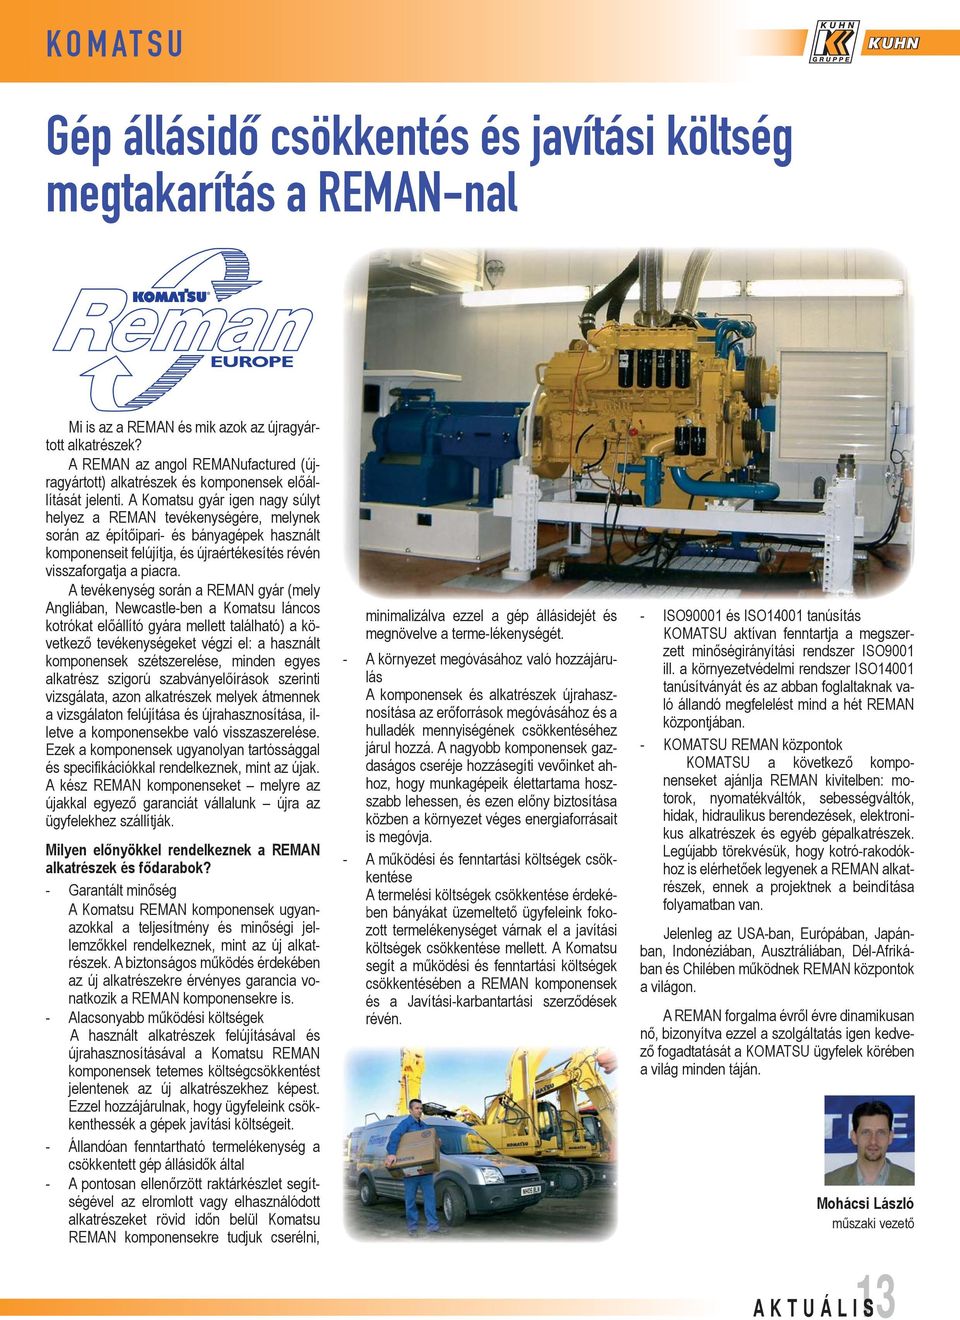 A Komatsu gyár igen nagy súlyt helyez a REMAN tevékenységére, melynek során az építőipari- és bányagépek használt komponenseit felújítja, és újraértékesítés révén visszaforgatja a piacra.